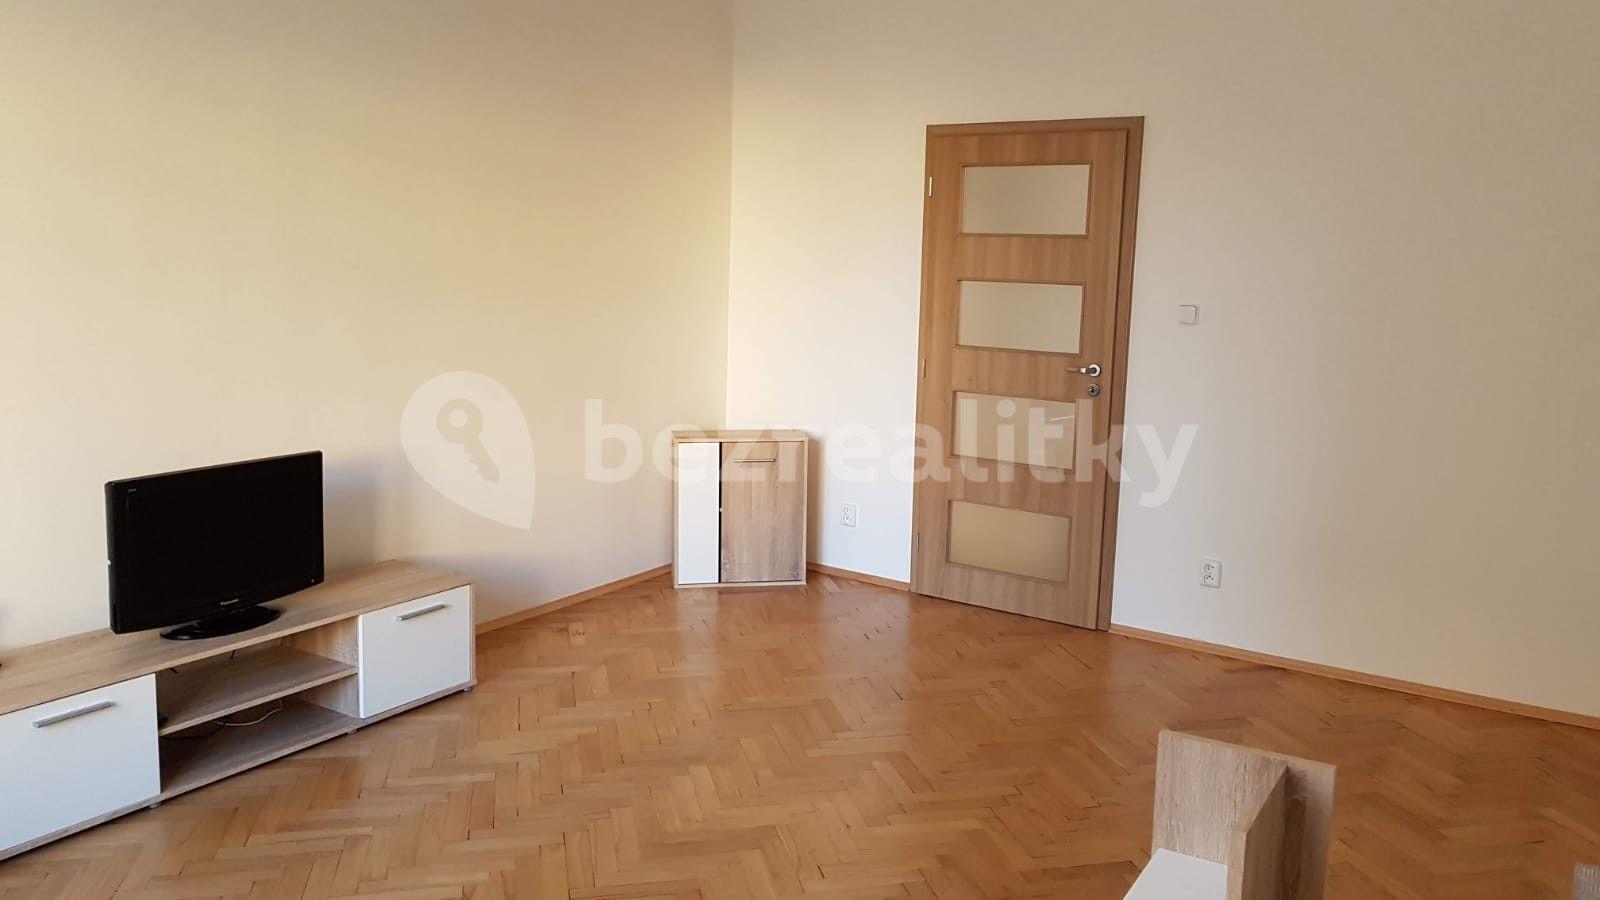 1 bedroom with open-plan kitchen flat for sale, 47 m², Žerotínova, Prague, Prague